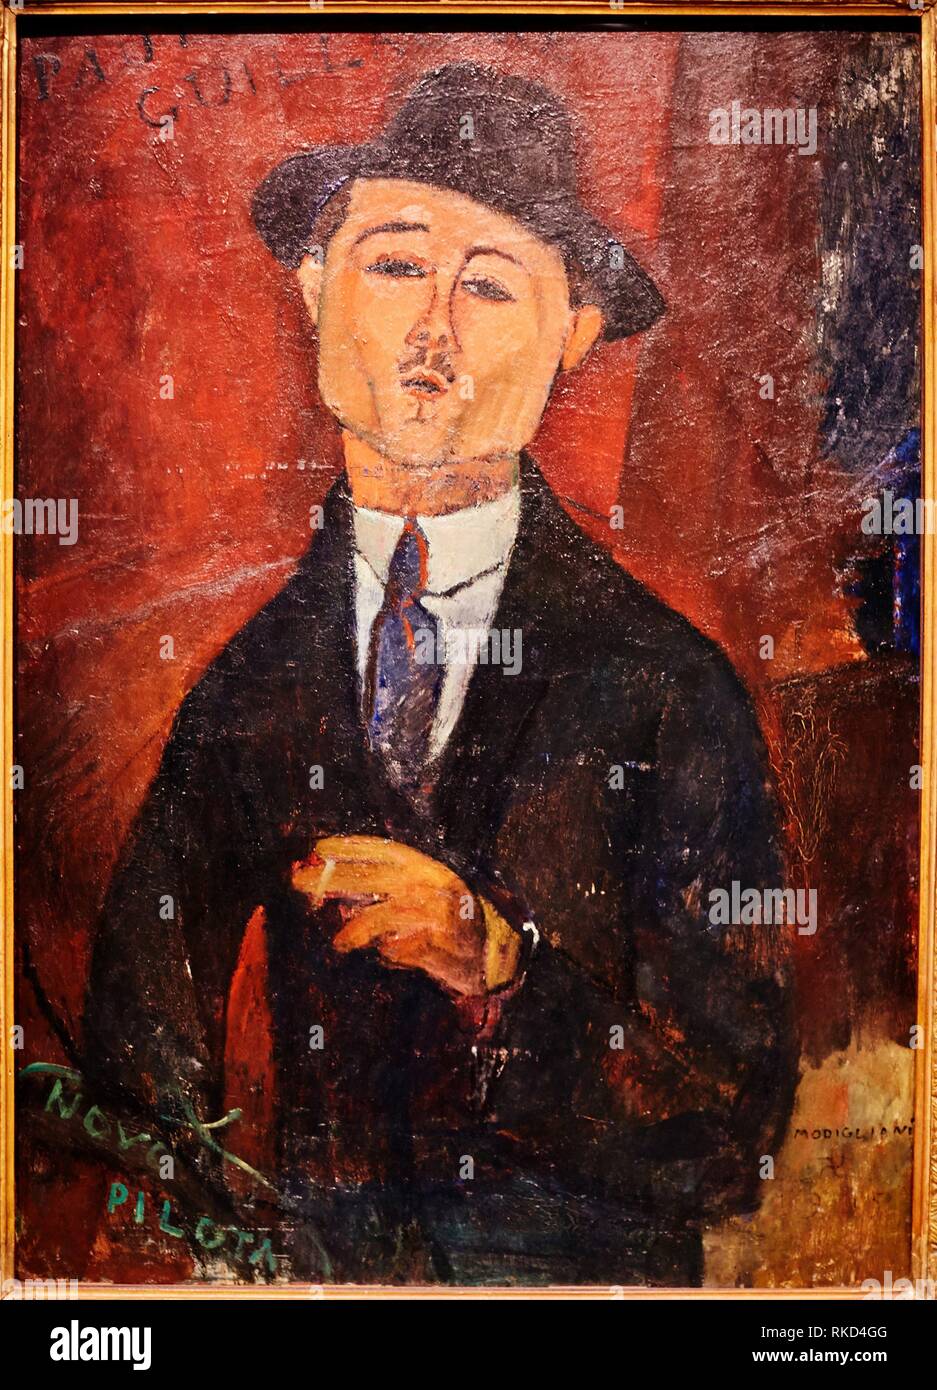 ''' Paul Guillaume, Novo Pilota'', 1915 (Öl auf Pappe), Amedeo Modigliani, (1884-1920), Musée de L'Orangerie, Tuileries, Paris, Frankreich Stockfoto